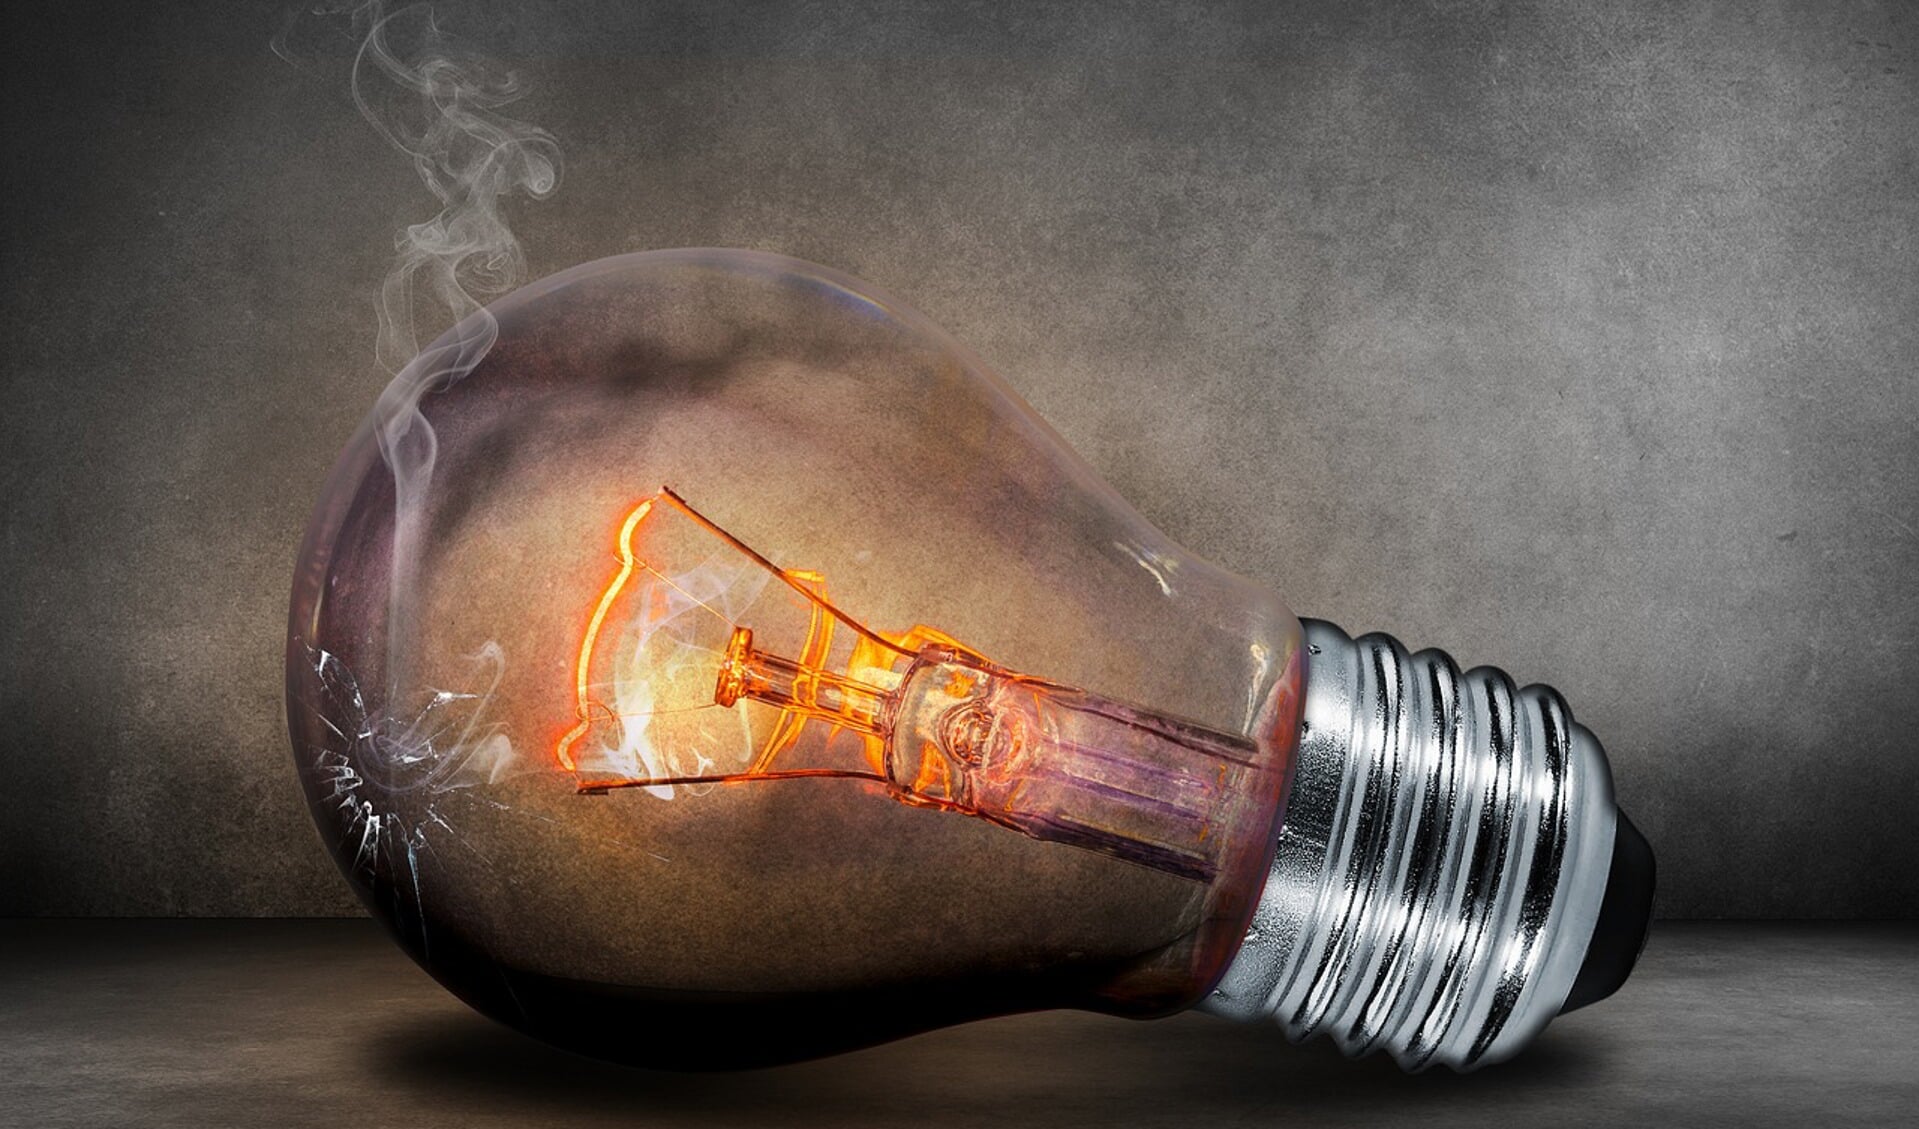 Ideeën genoeg om energie te besparen. FOTO: PixaBay.